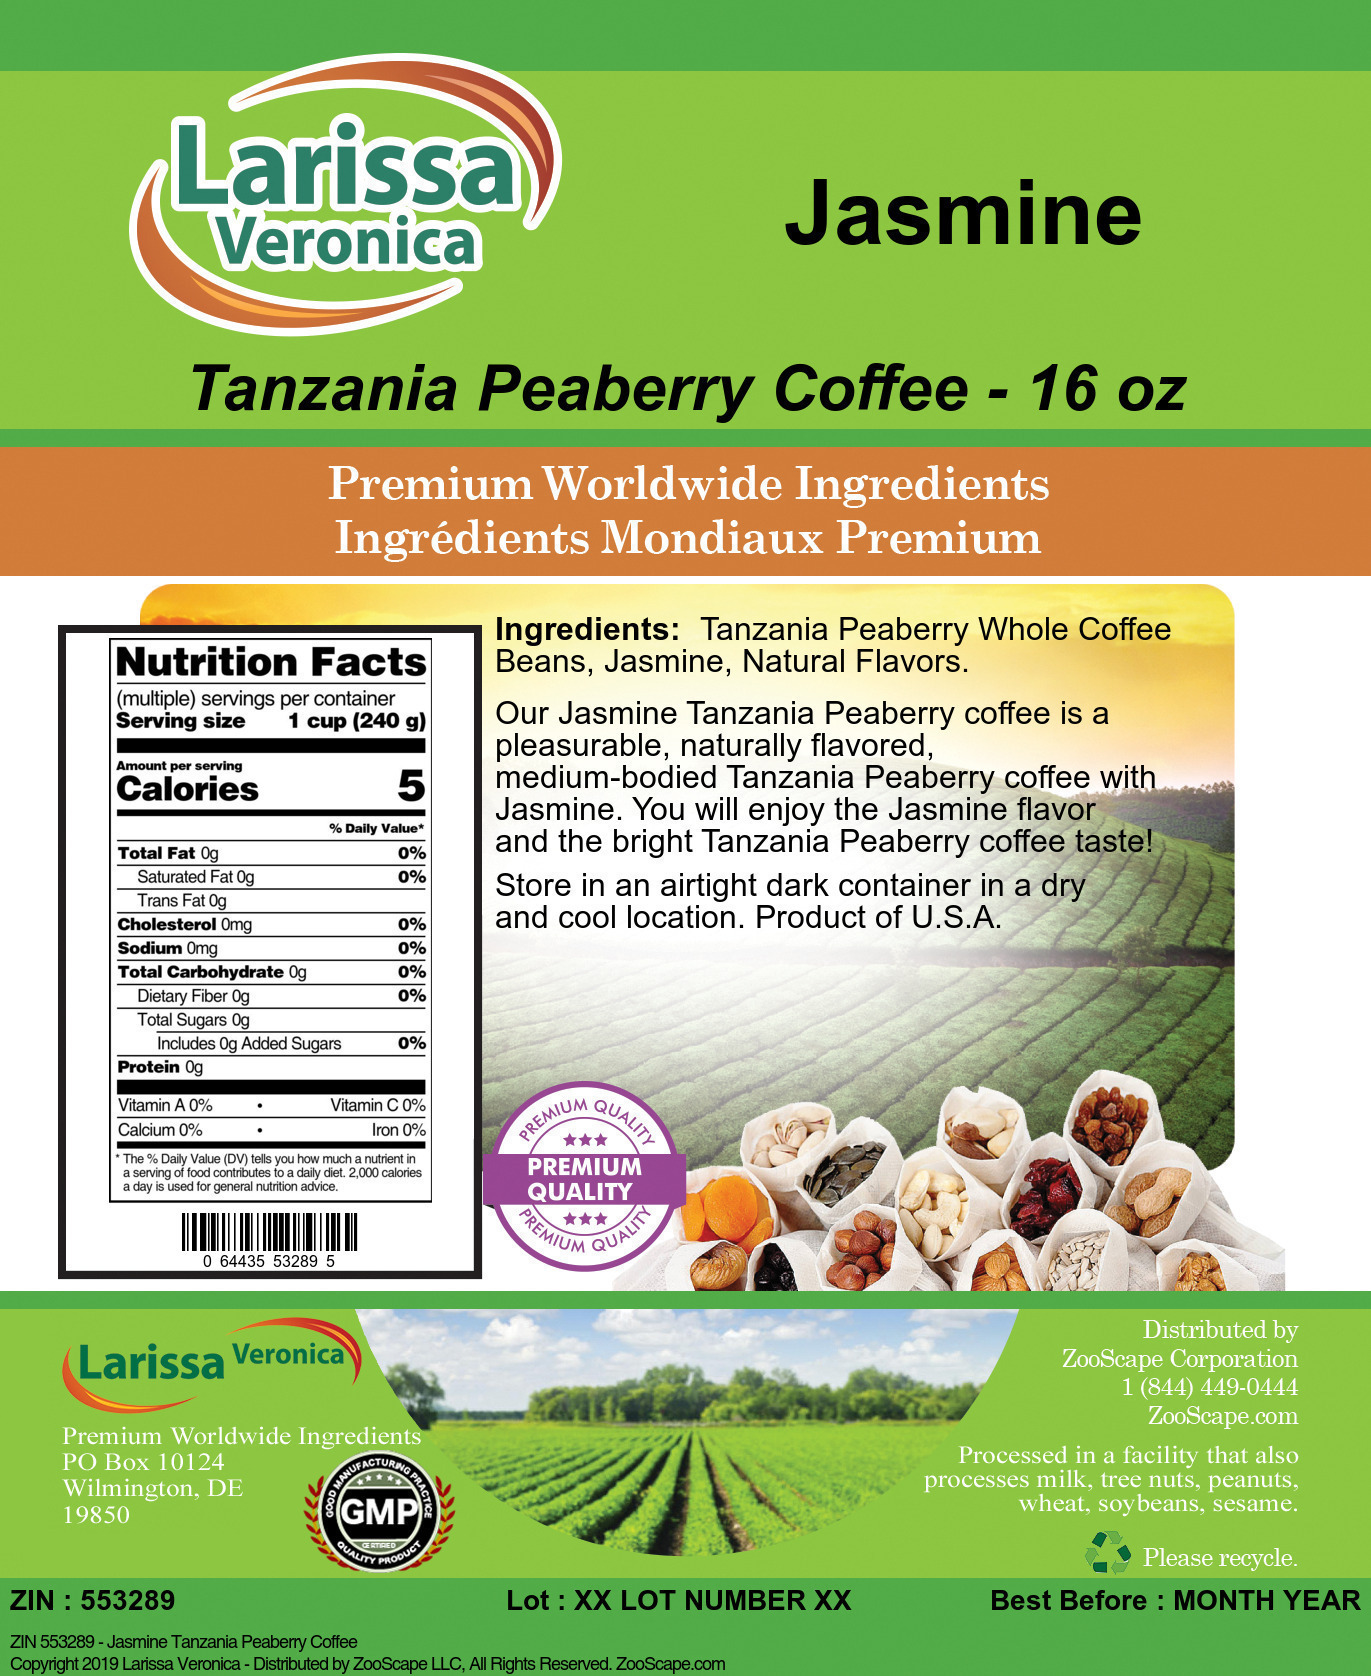 Jasmine Tanzania Peaberry Coffee - Label